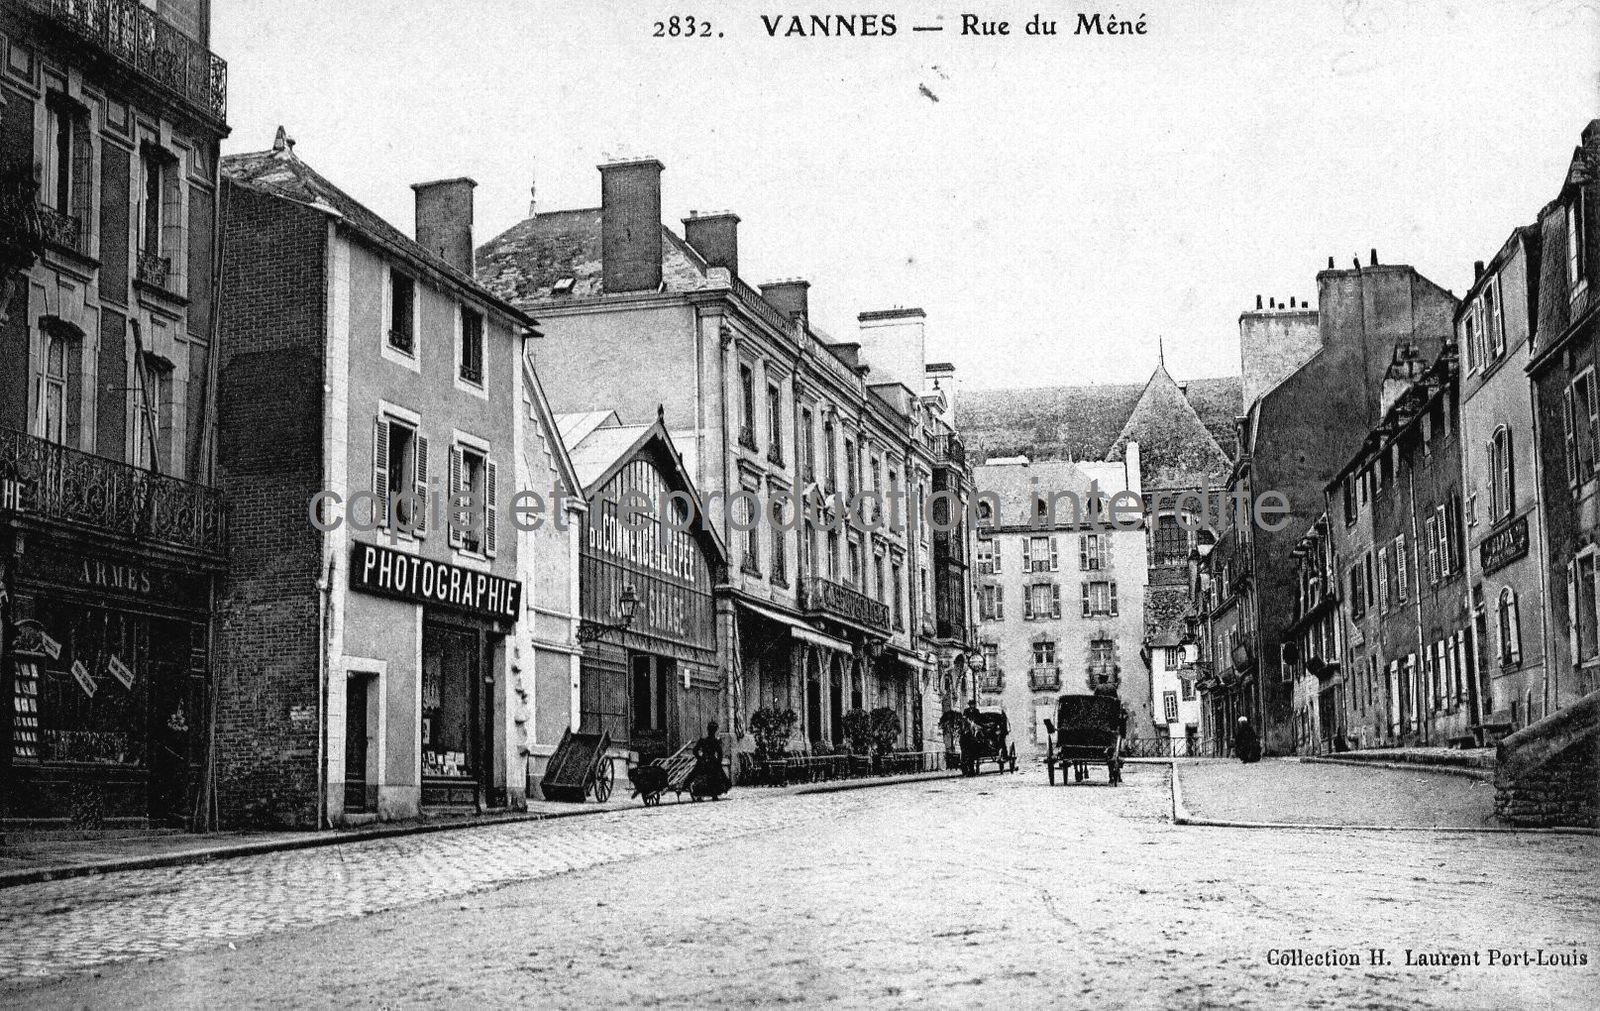 La rue Joseph Le Brix et rue du Mené